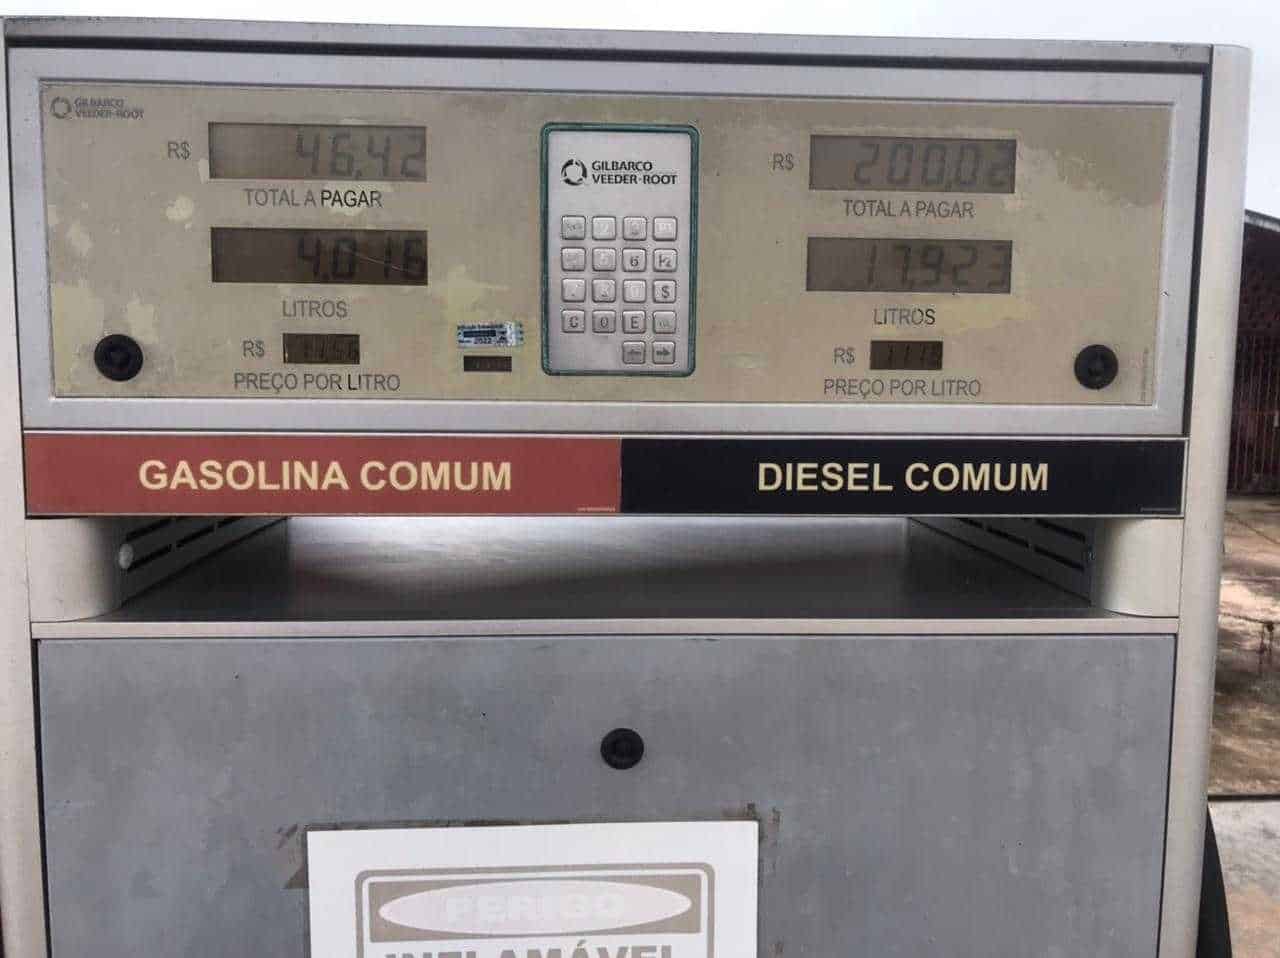 Litro da gasolina custa R$ 11,56 no interior do Acre